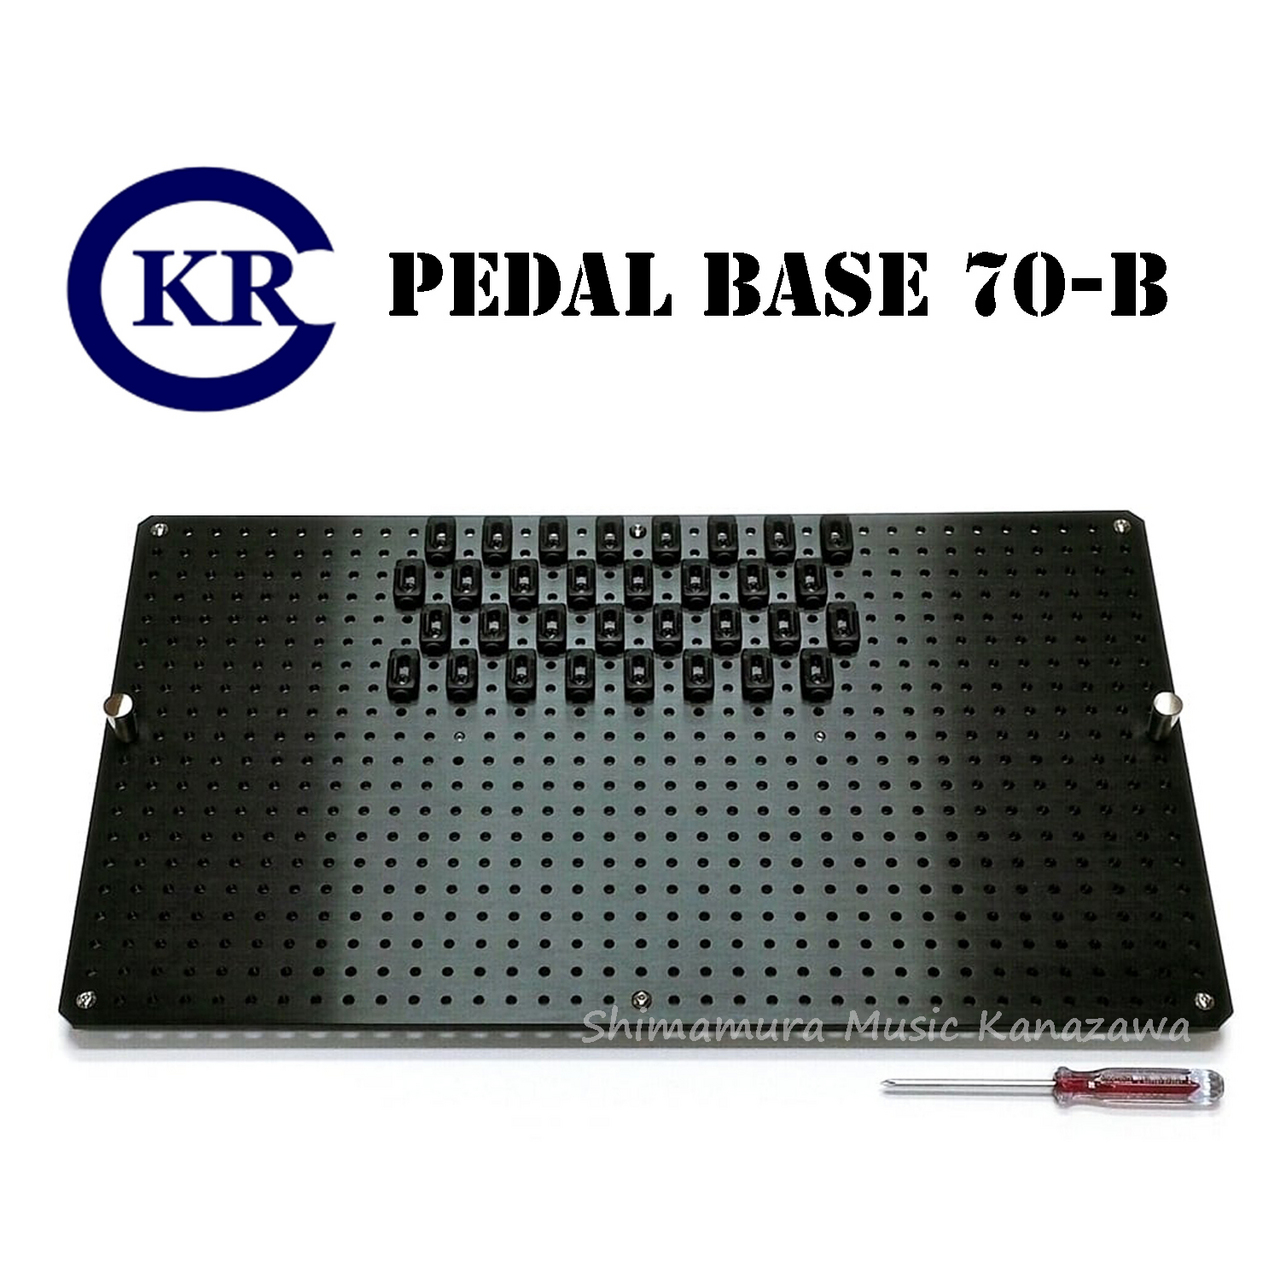 Pedal BoradKRCraft / PEDAL BASE 70-B